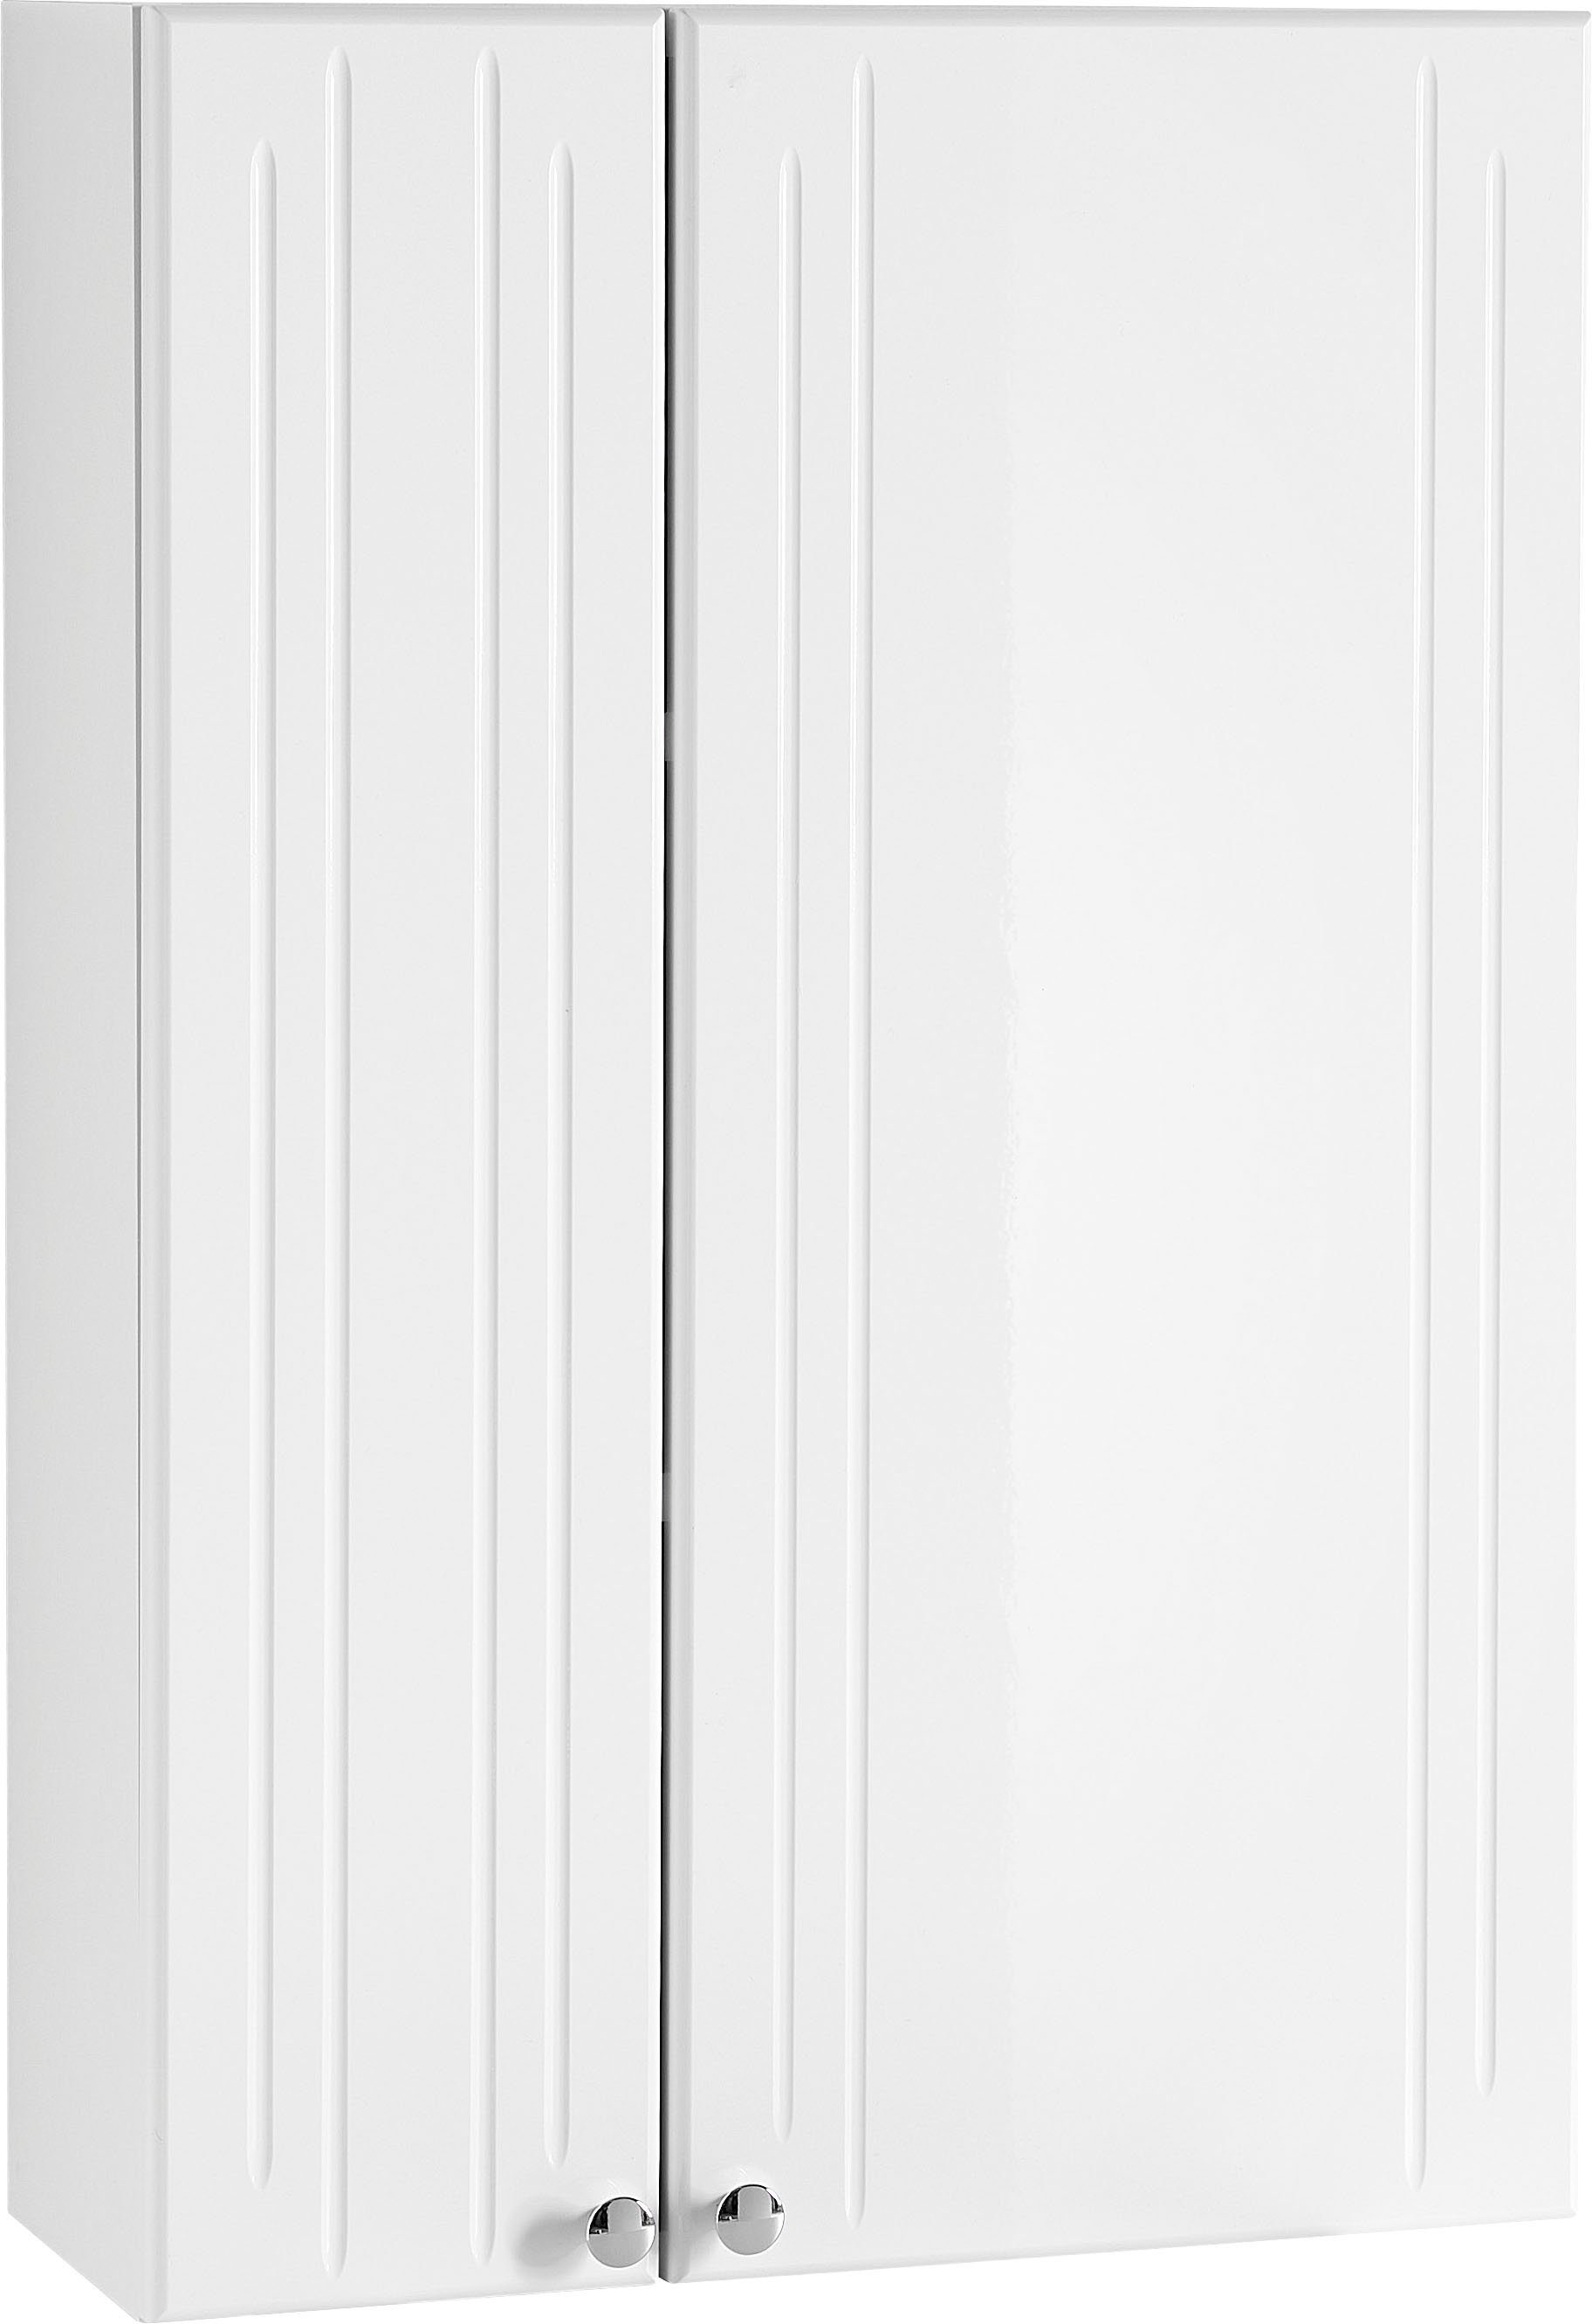 Saphir Hangend kastje Quickset 955 Wand-Badschrank 50 cm breit mit 2 Türen, 2 Einlegeböden